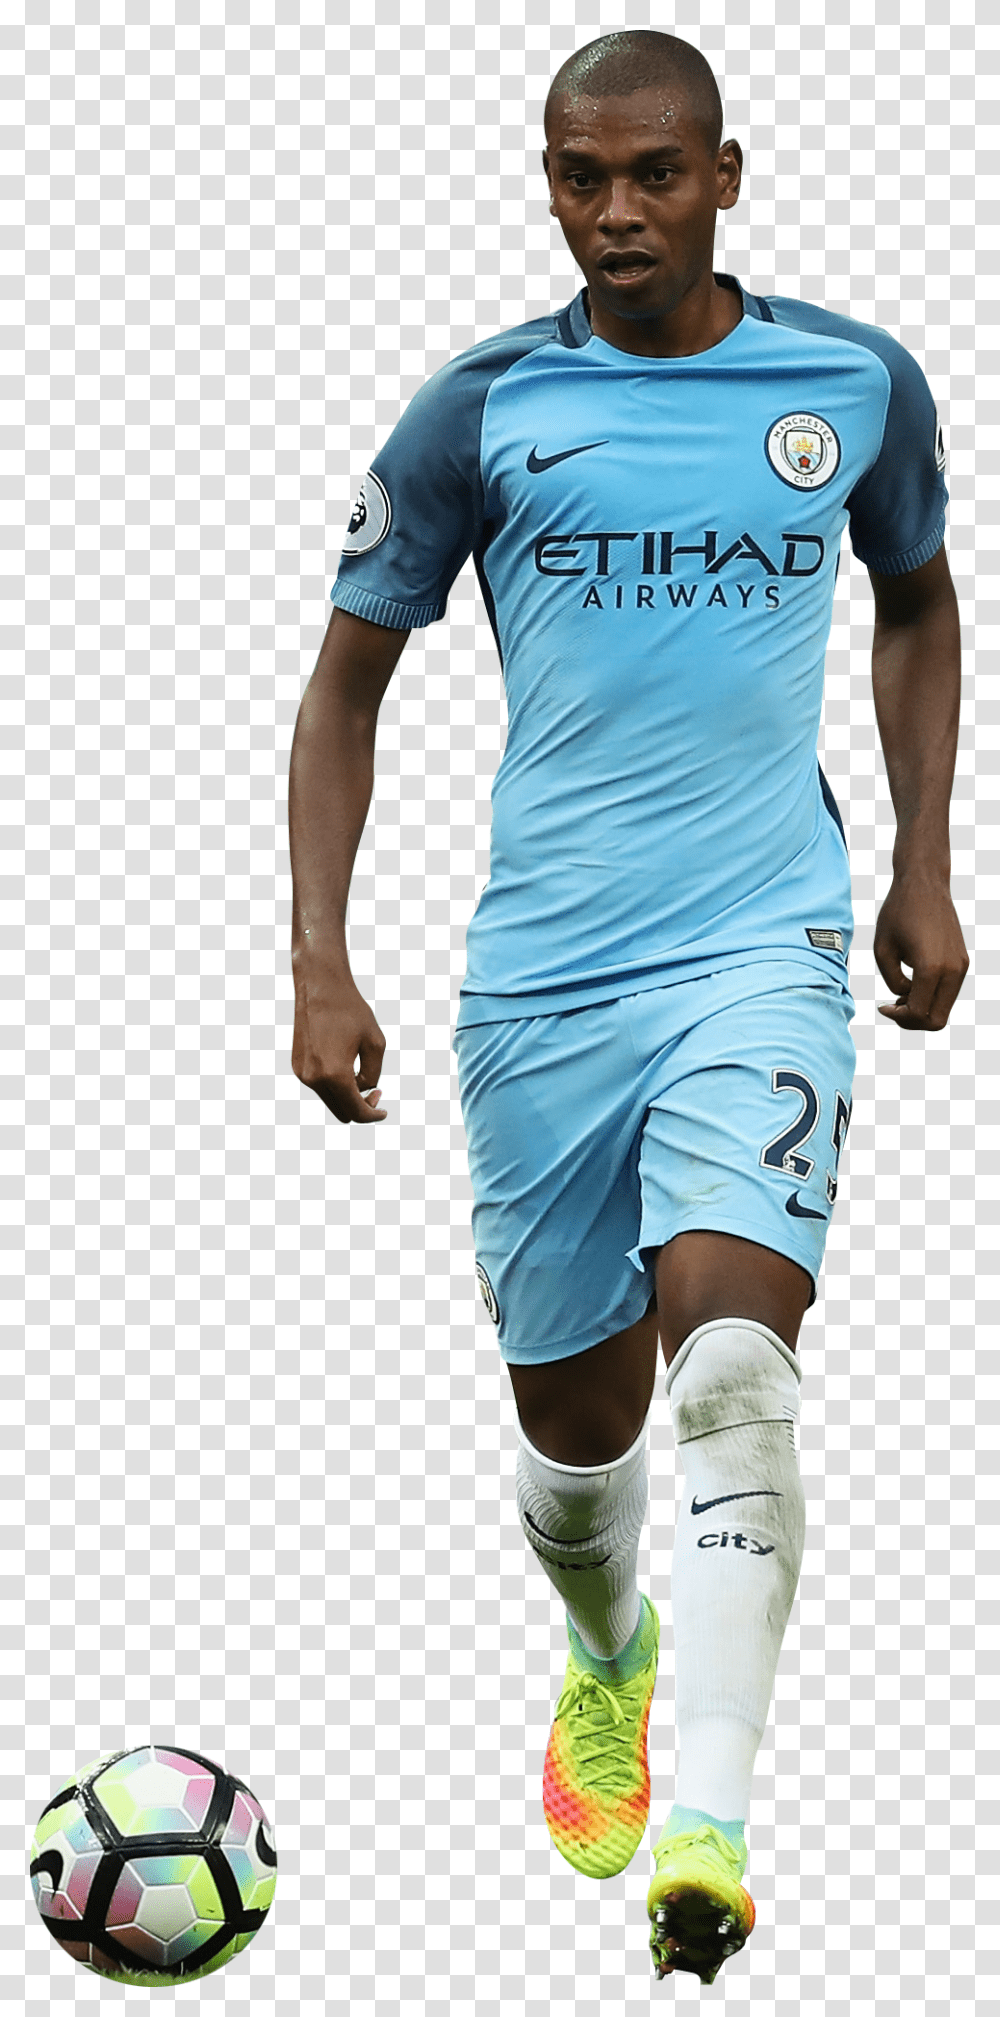 Fernandinhorender Manchester City Player, Shorts, Soccer Ball, Football Transparent Png